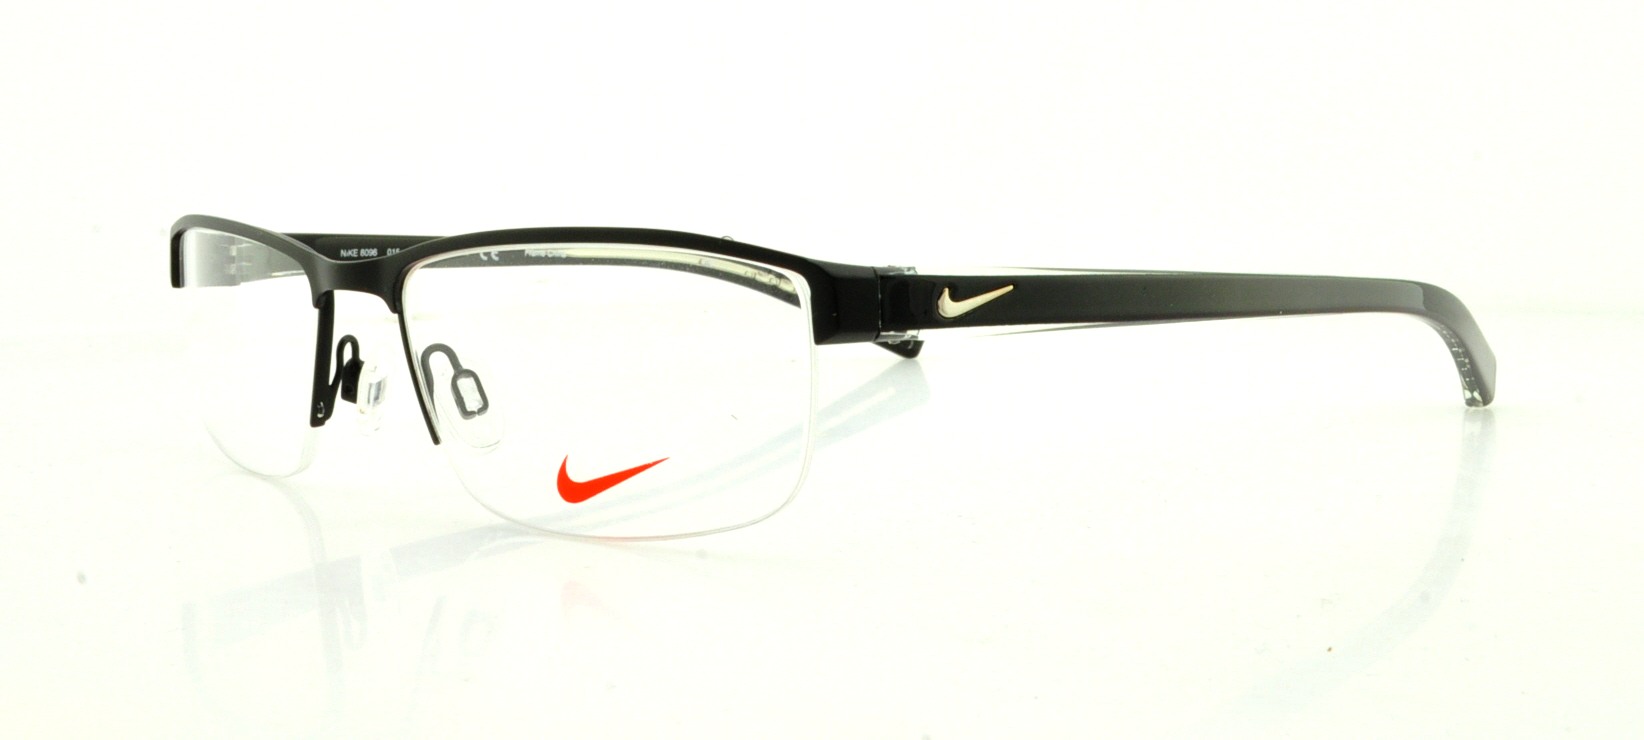 Designer Frames Outlet Nike Eyeglasses 8096